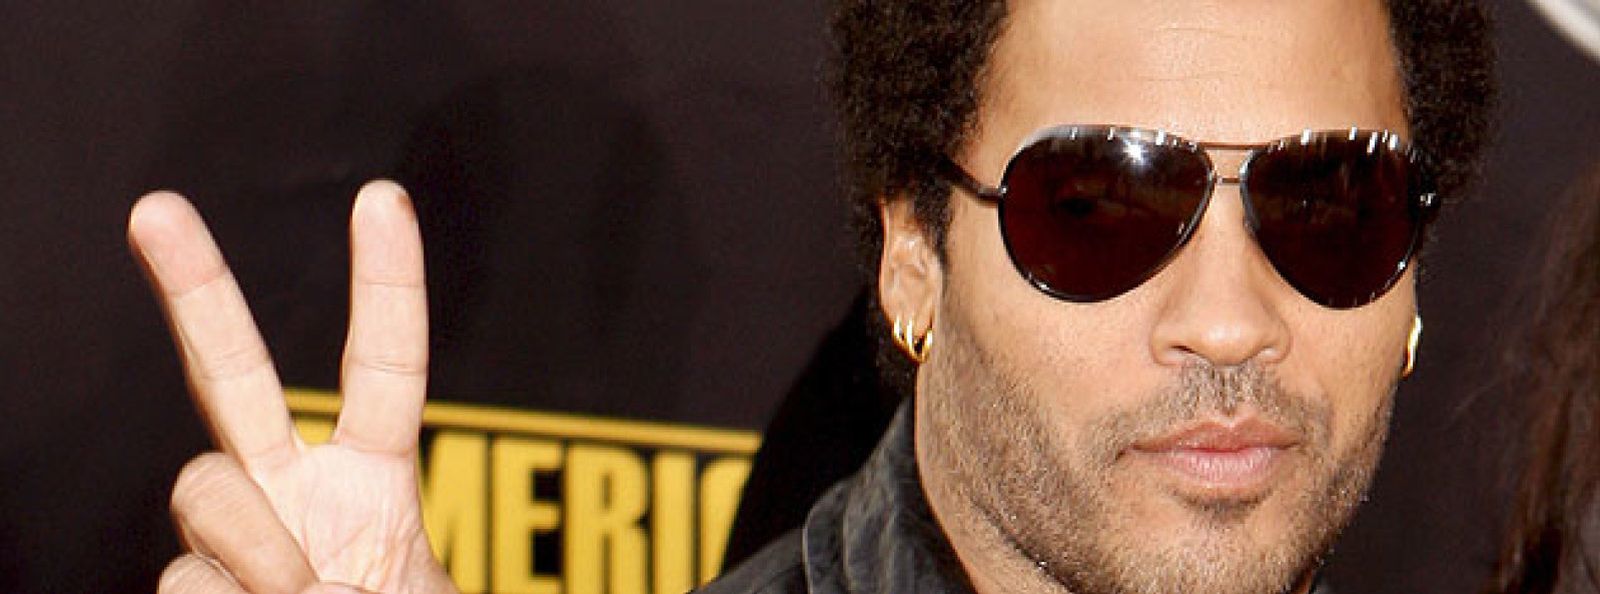 Foto: Las baladas secuestran el rock de Lenny Kravitz